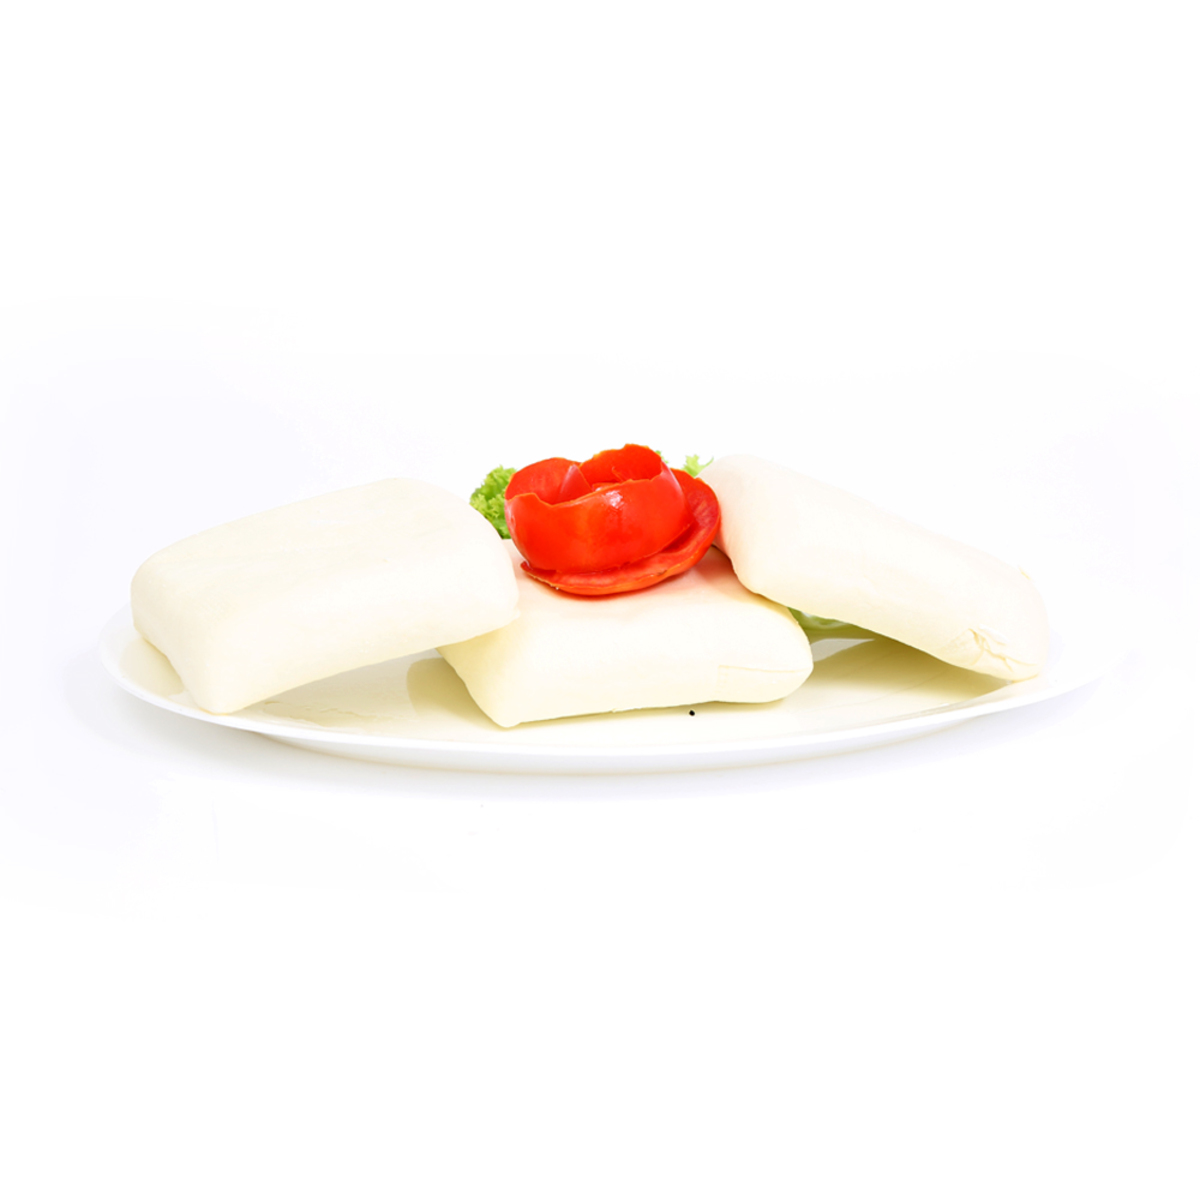 akkawi cheese white